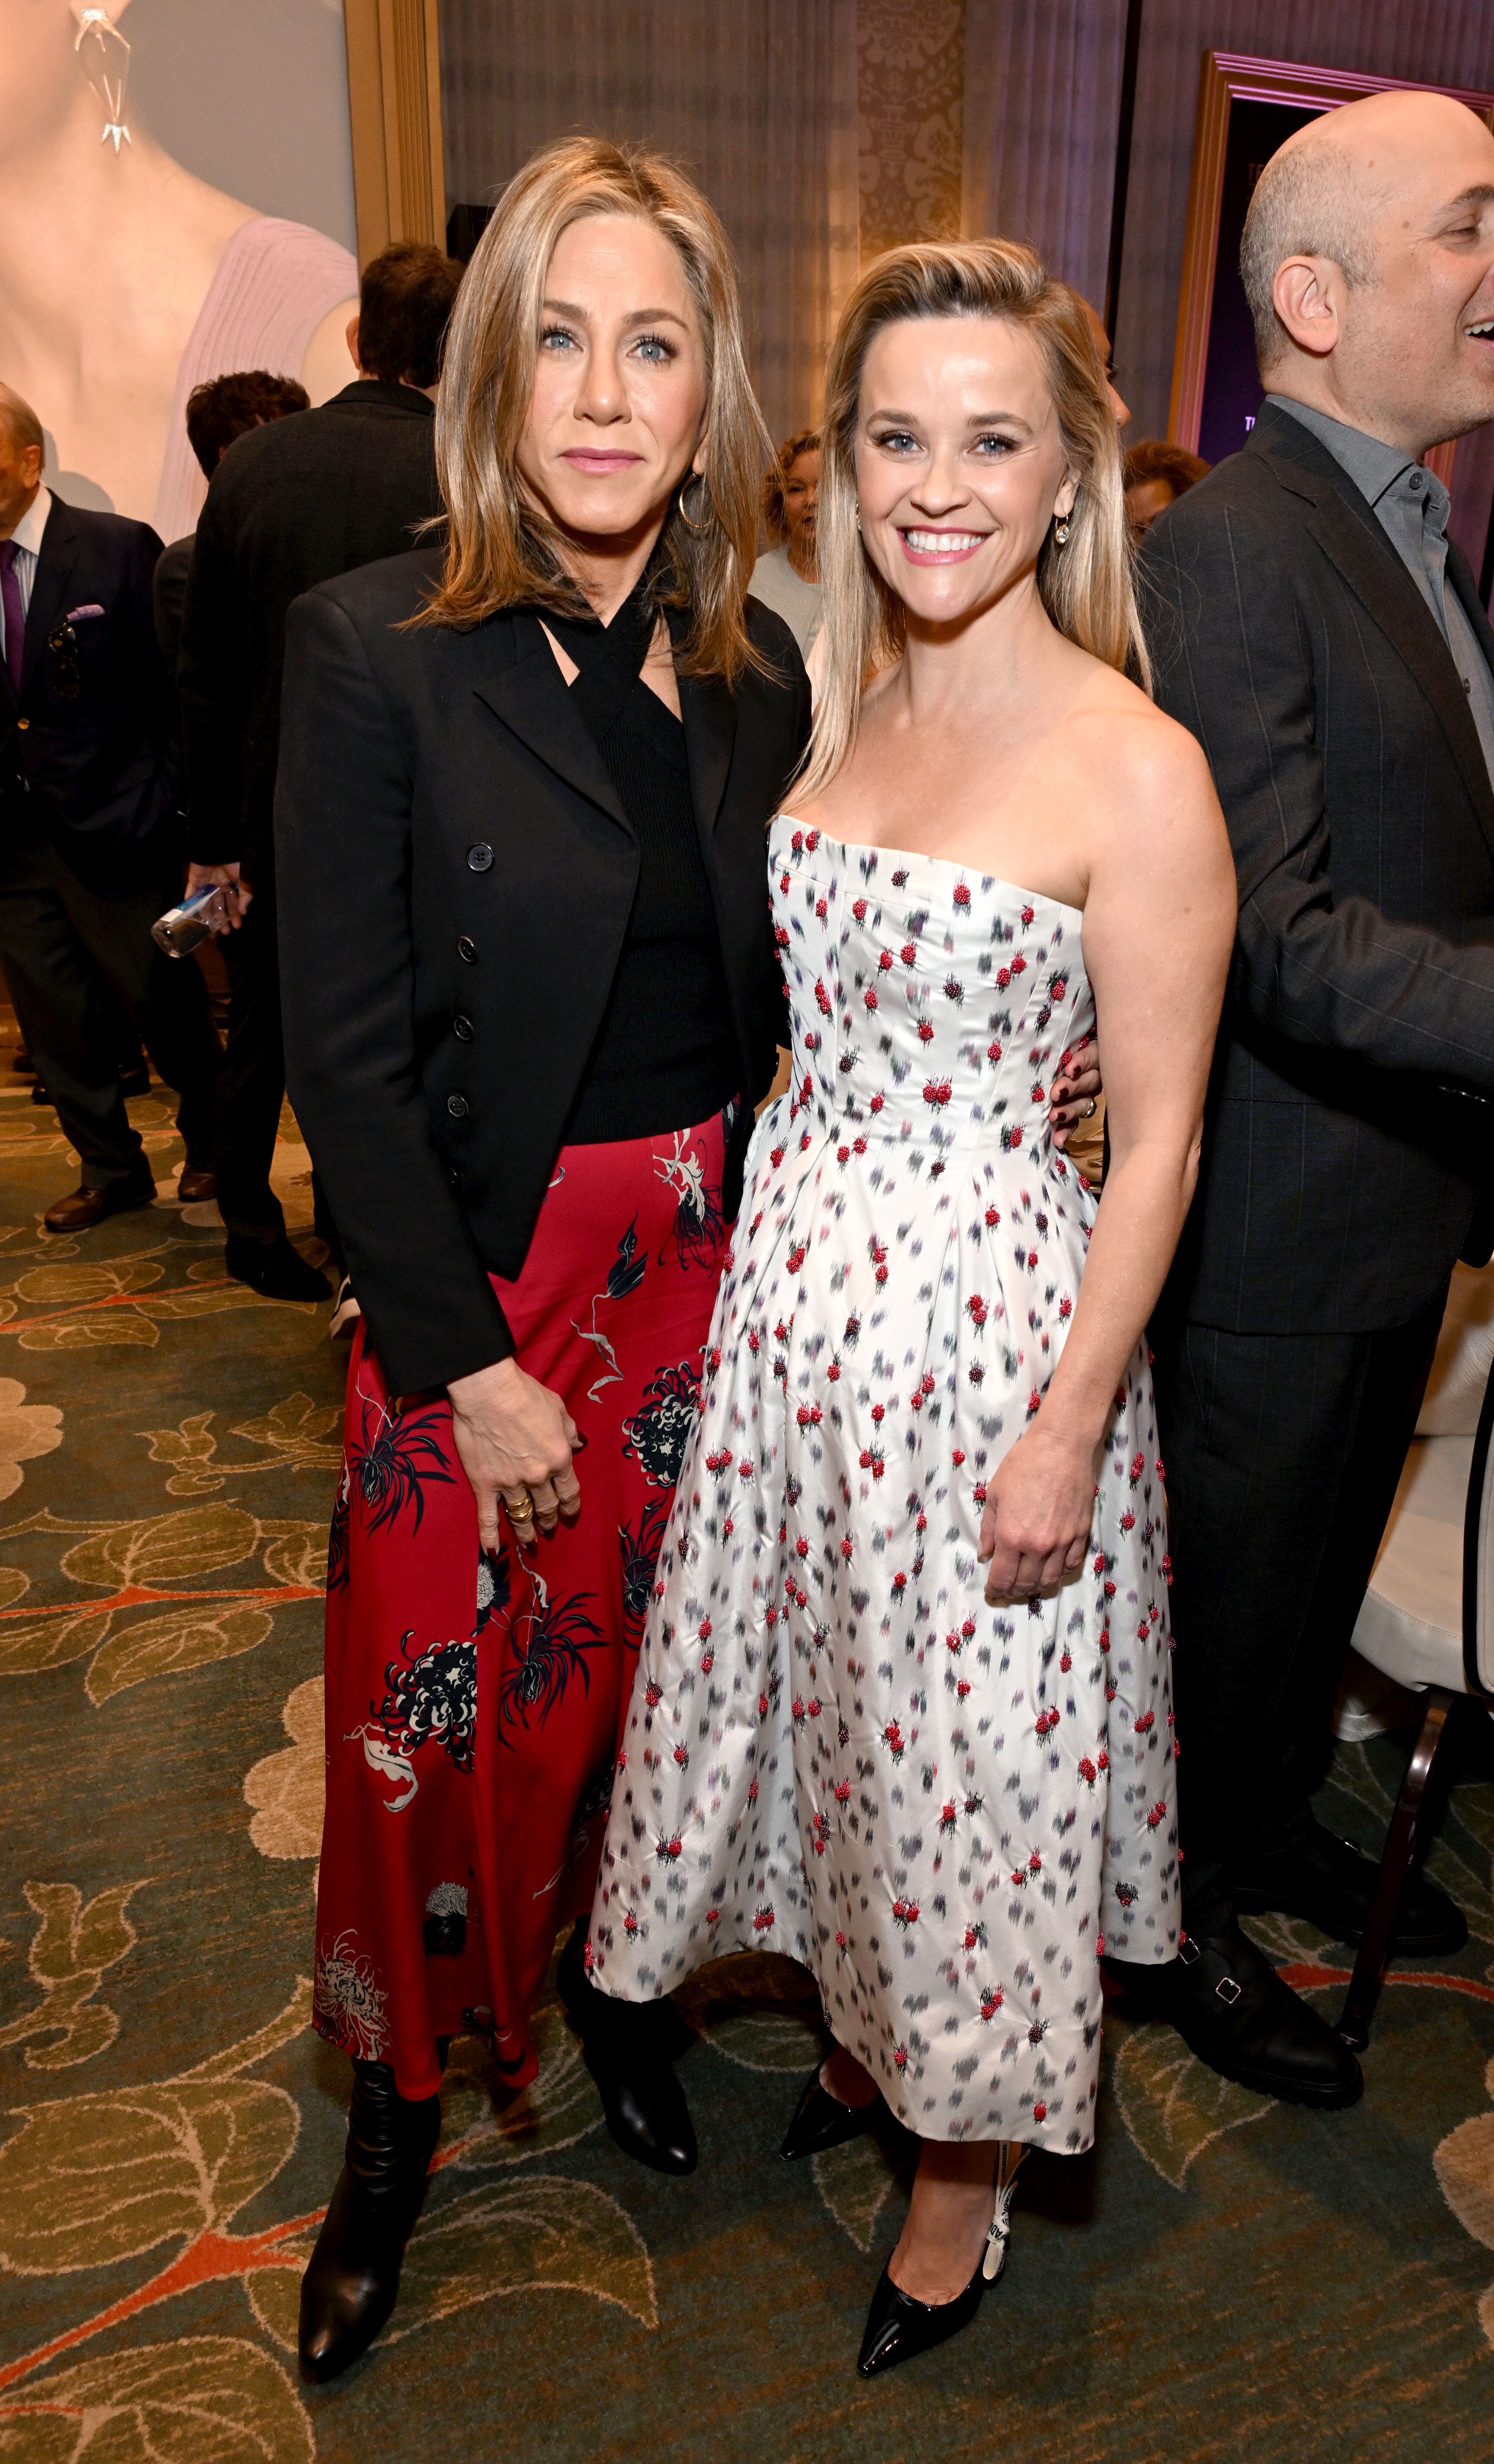 Jennifer Aniston y Reese Witherspoon, compañeras en 'The Morning Show', otra de las series reconocidas por los premios AFI, posaron juntas. Aniston combinó un top y una falda estampada con una chaqueta negra y Witherspoon eligió un vestido de Dior.